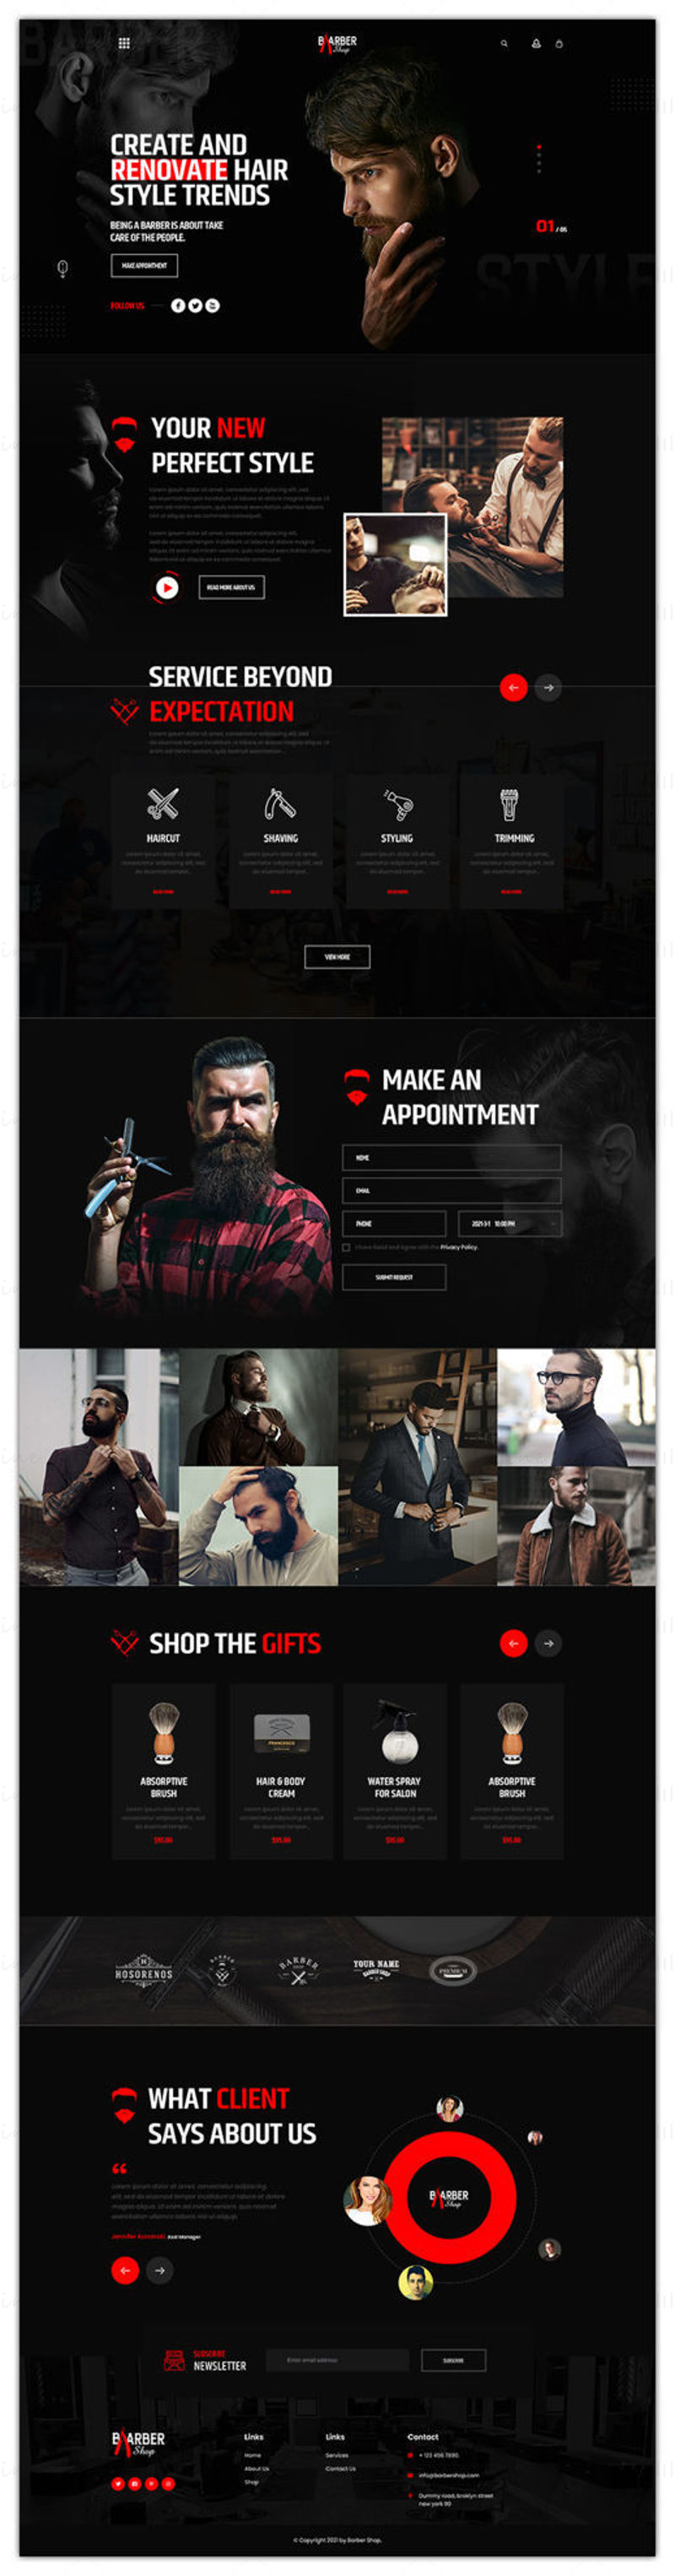 Interface utilisateur du site Web des barbiers et salons de coiffure Adobe Photoshop PSD